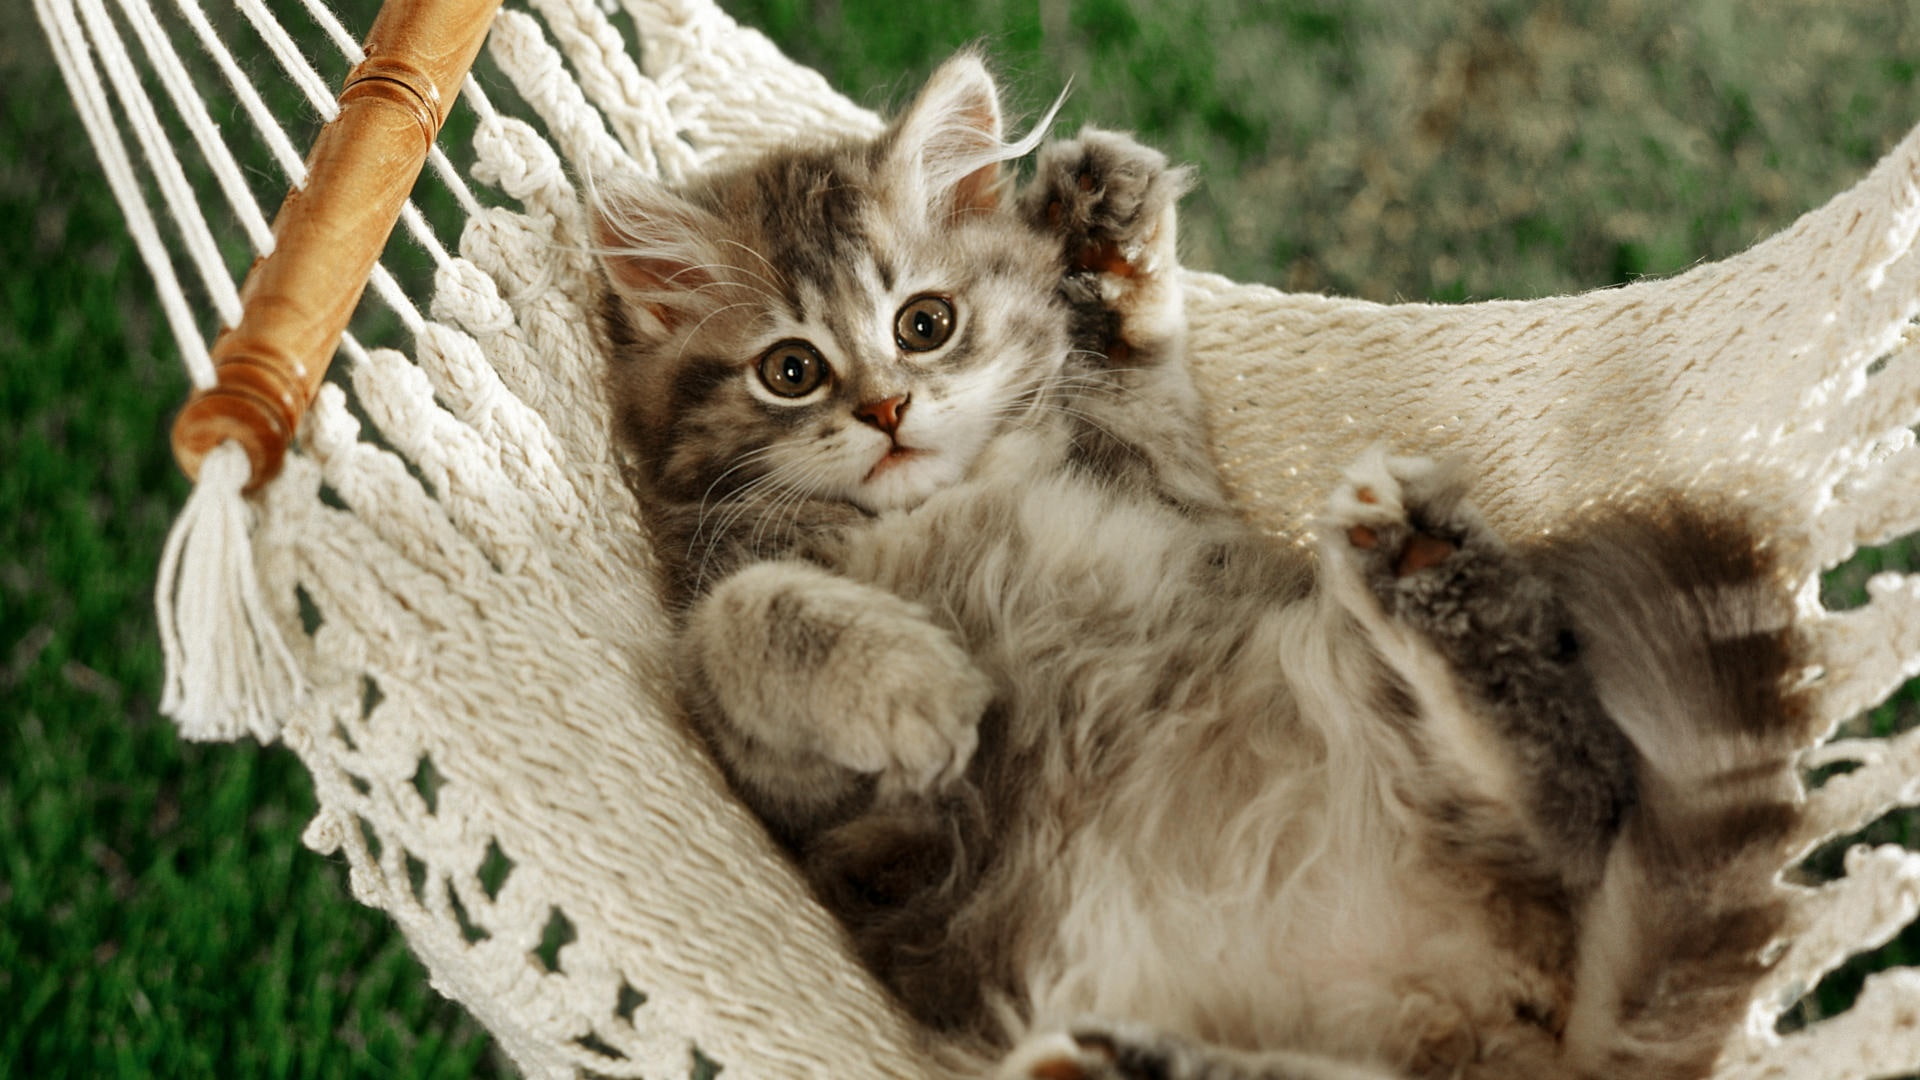 The cat lying in a hammock